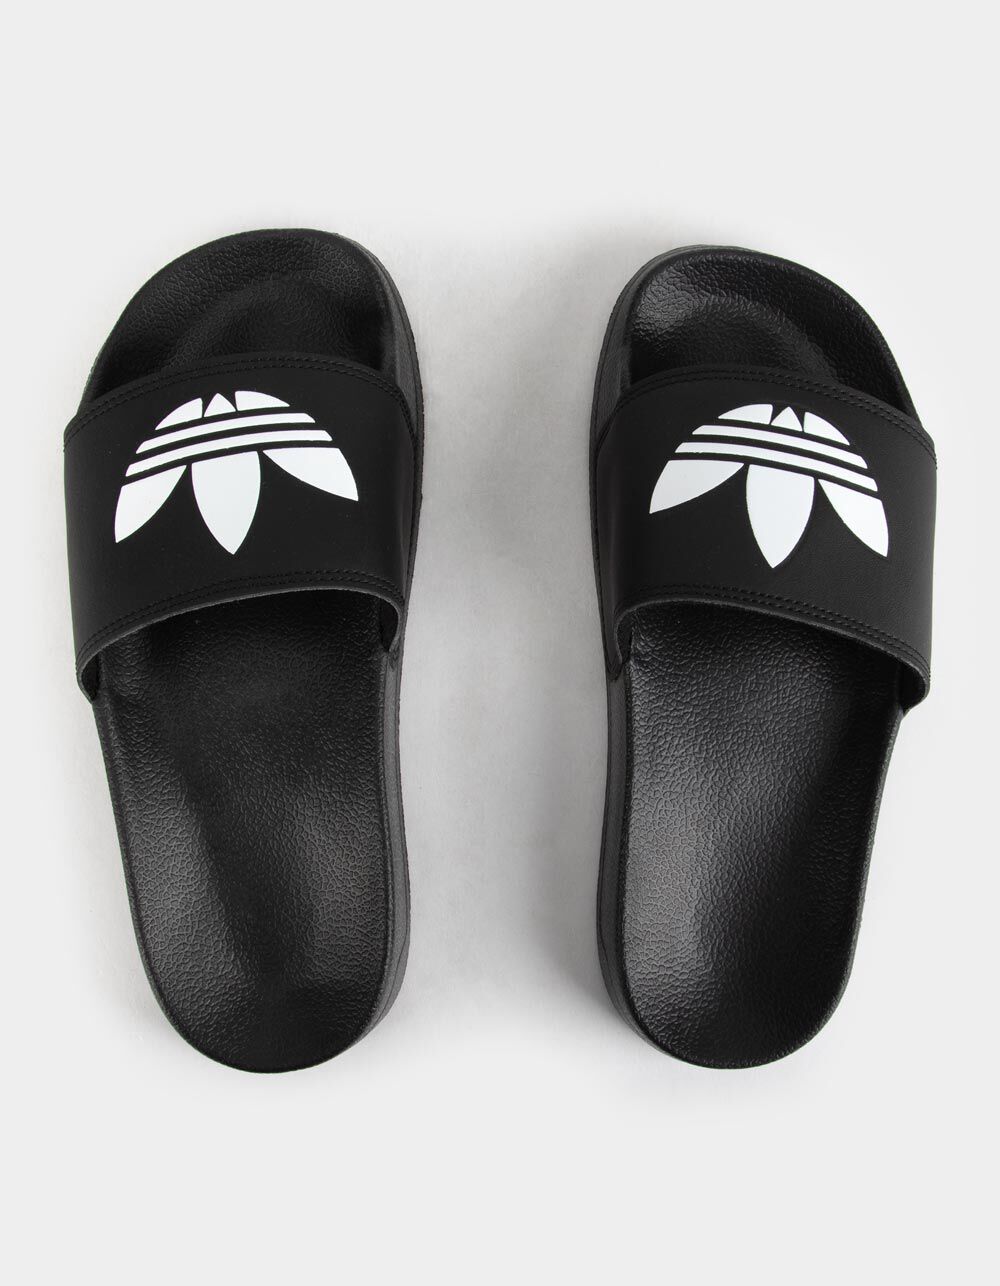 ADIDAS Adilette Lite Boys Slide Sandals - BLACK/WHITE | Tillys